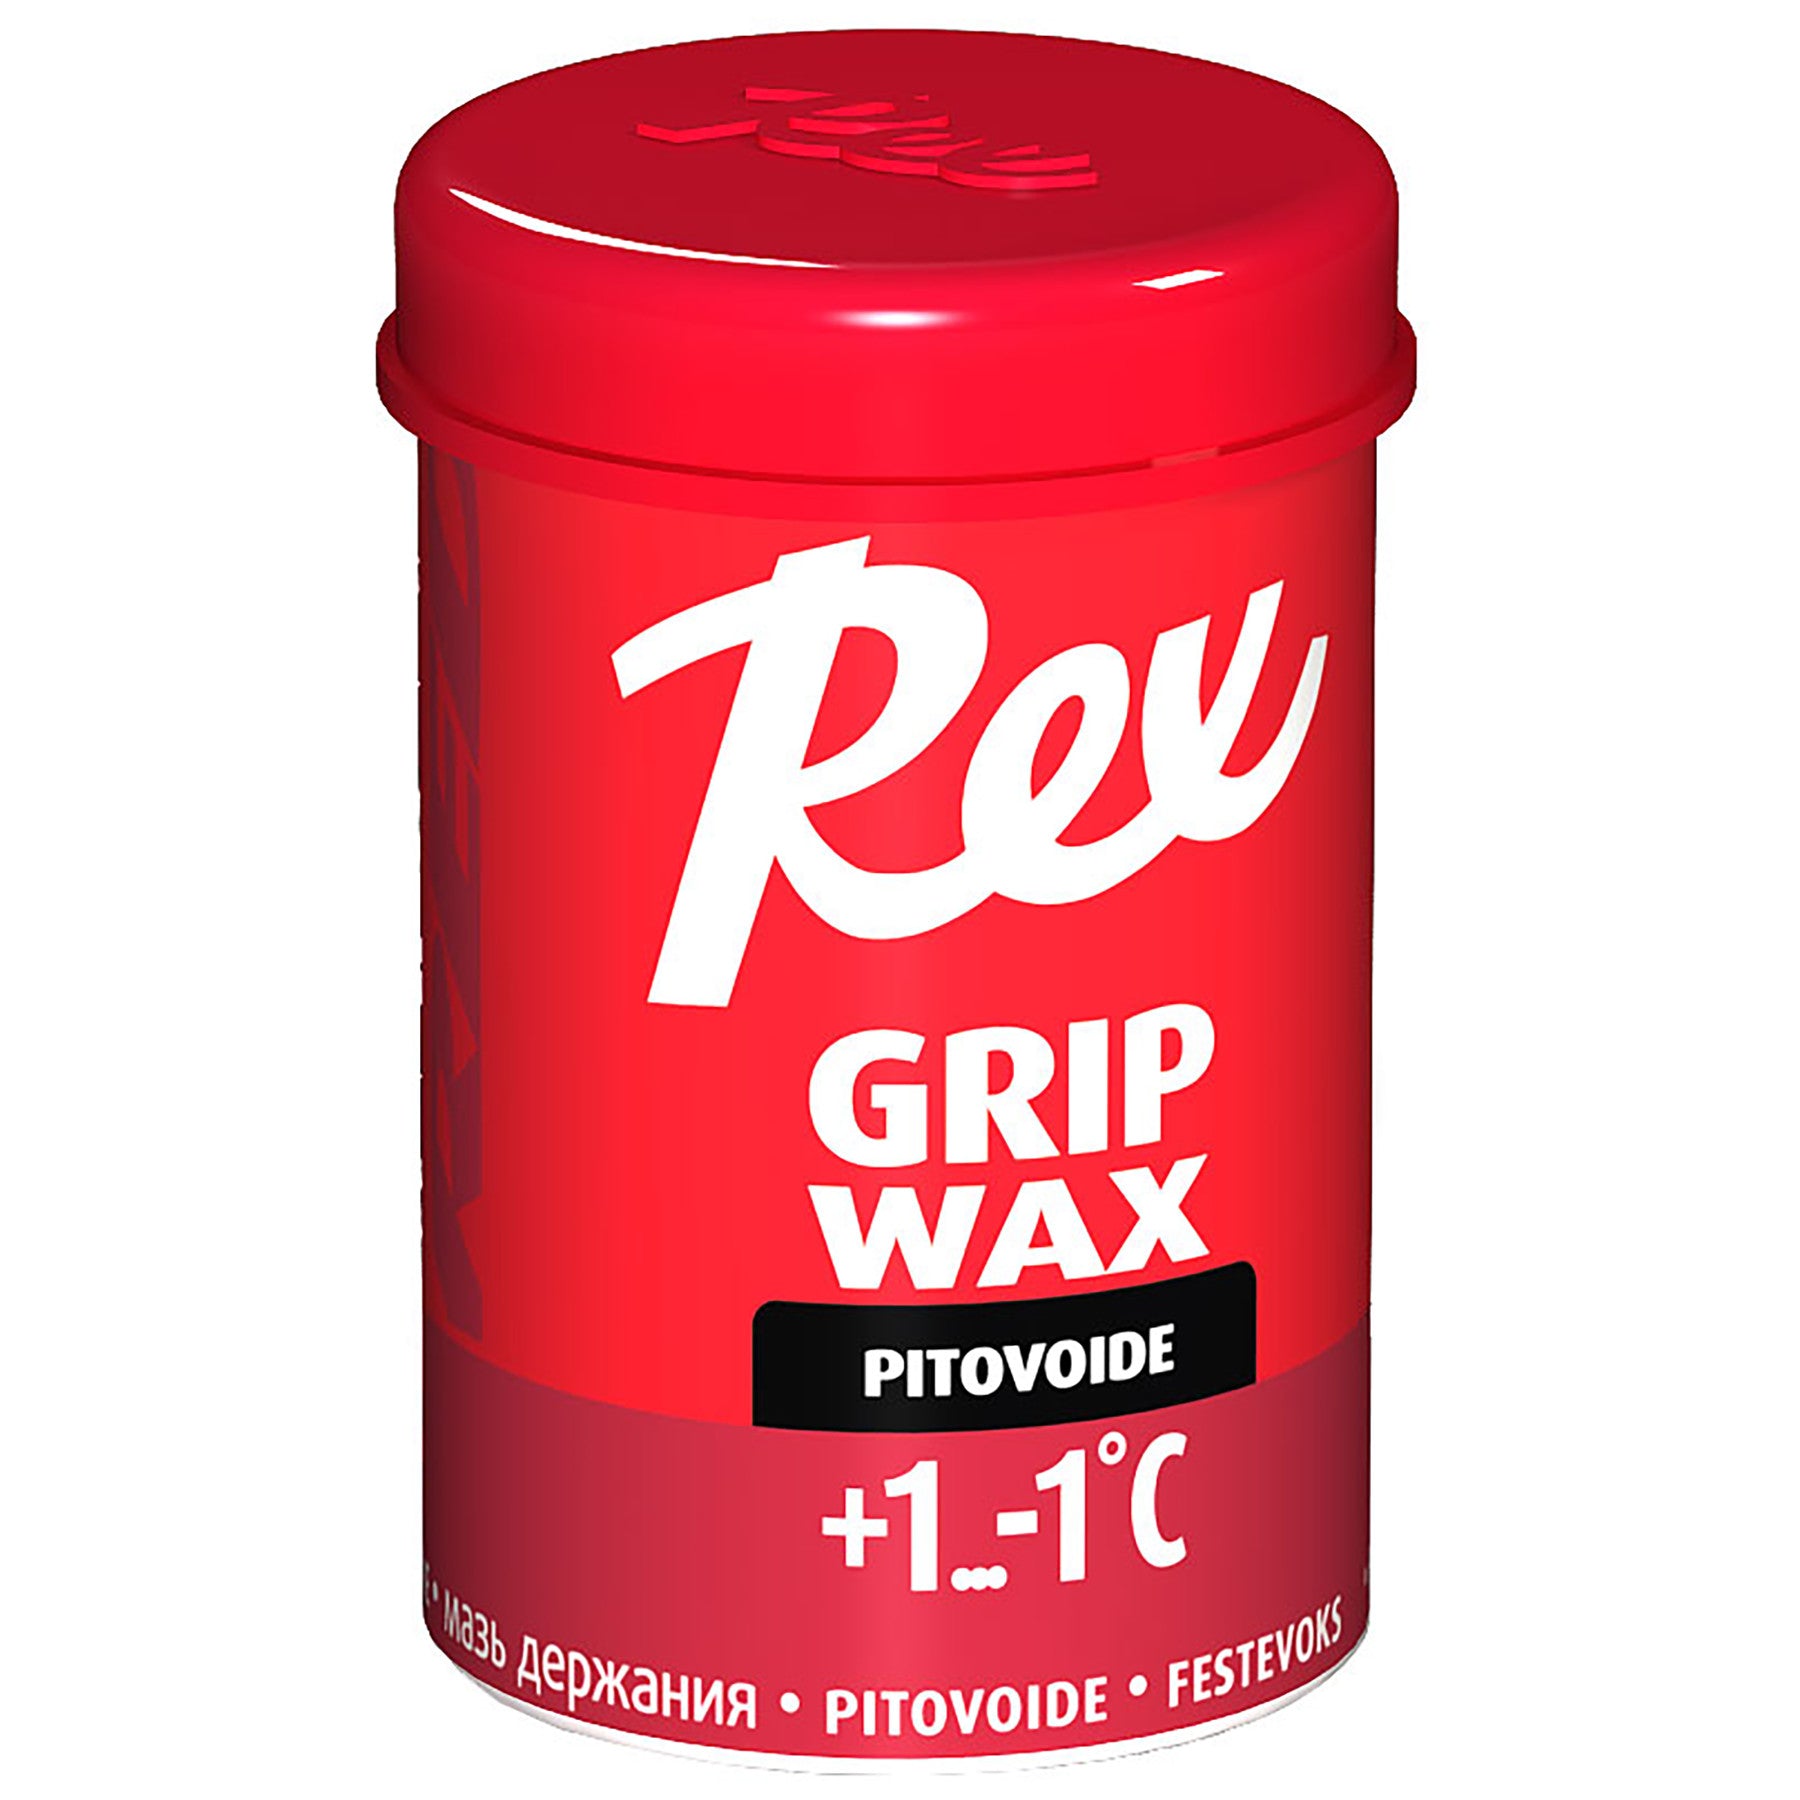 Rex Grip Wax 45g - 0